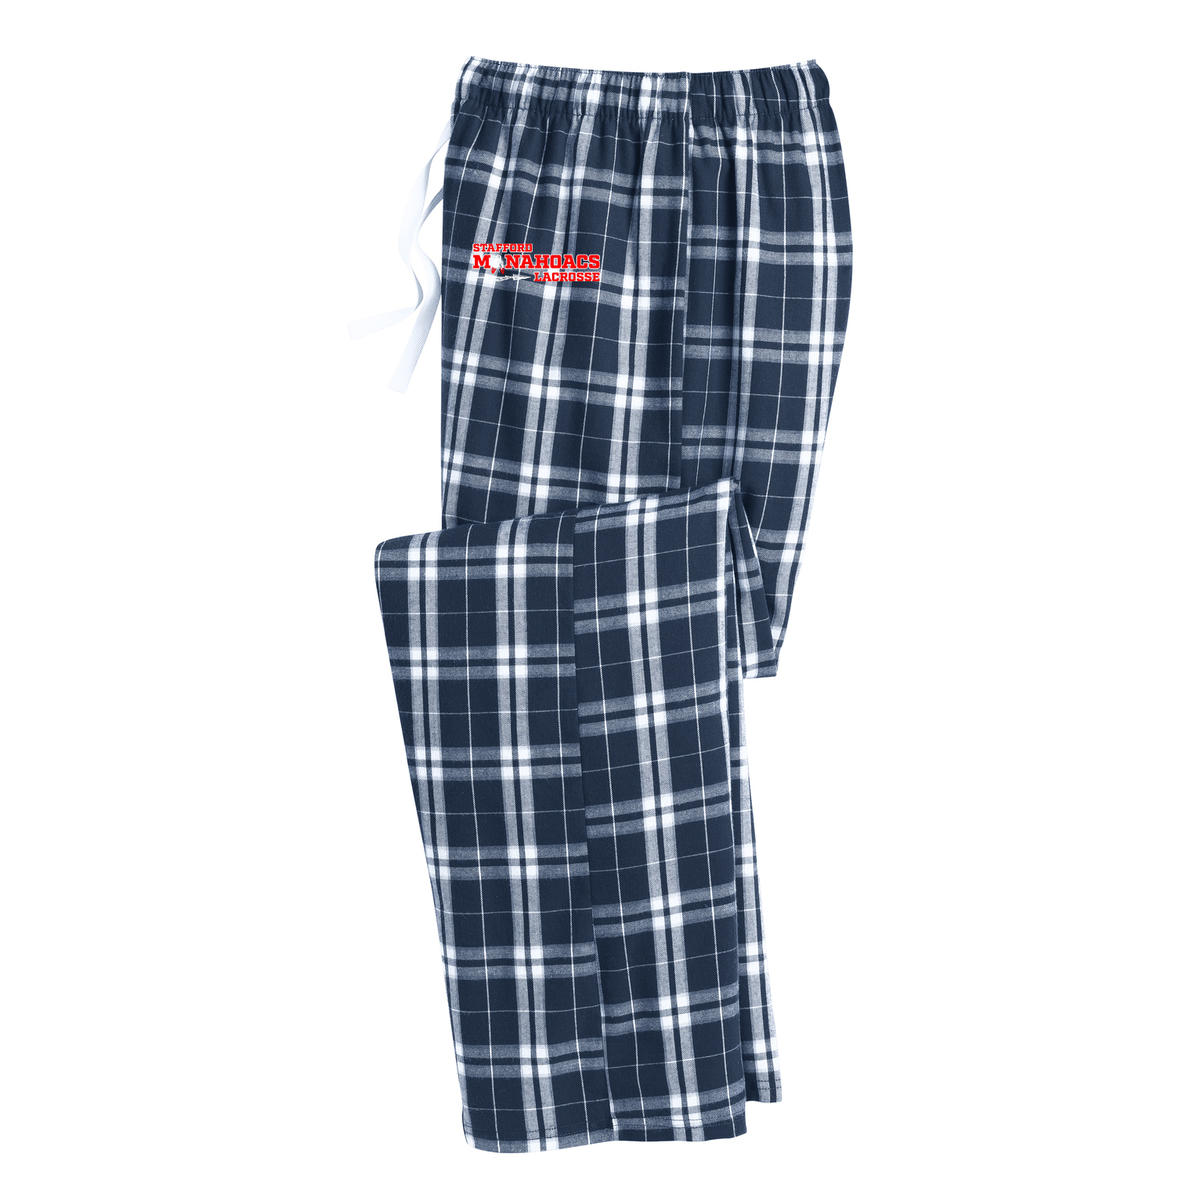 Stafford Lacrosse Plaid Pajama Pants